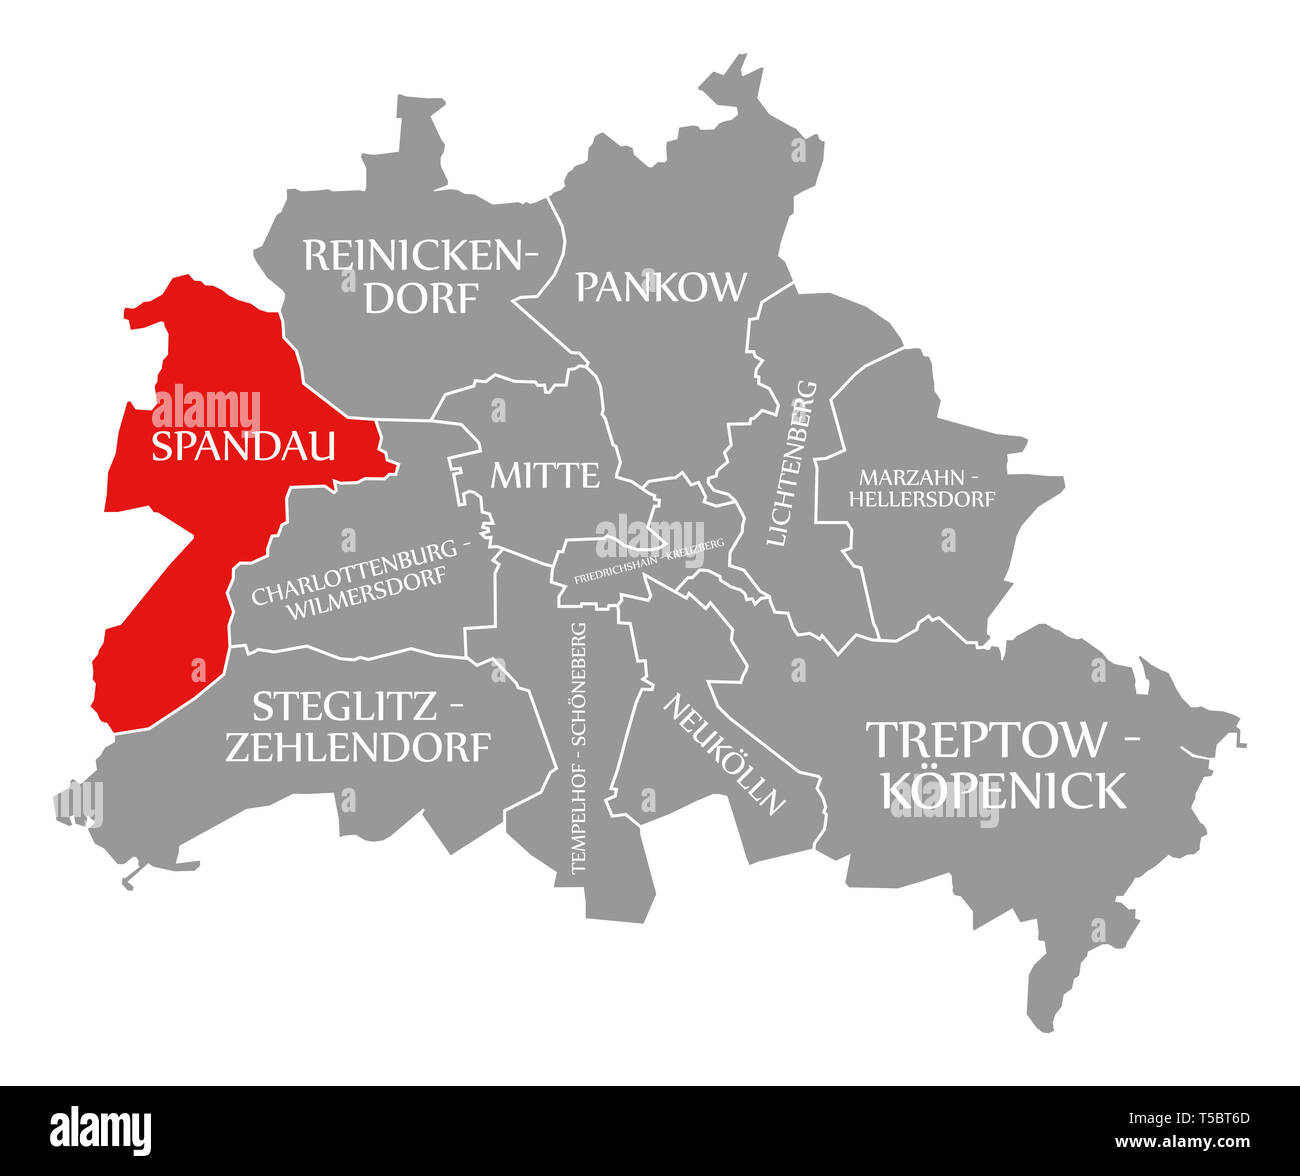 Spandau Stadtteil rot in der Karte von Berlin Deutschland hervorgehoben